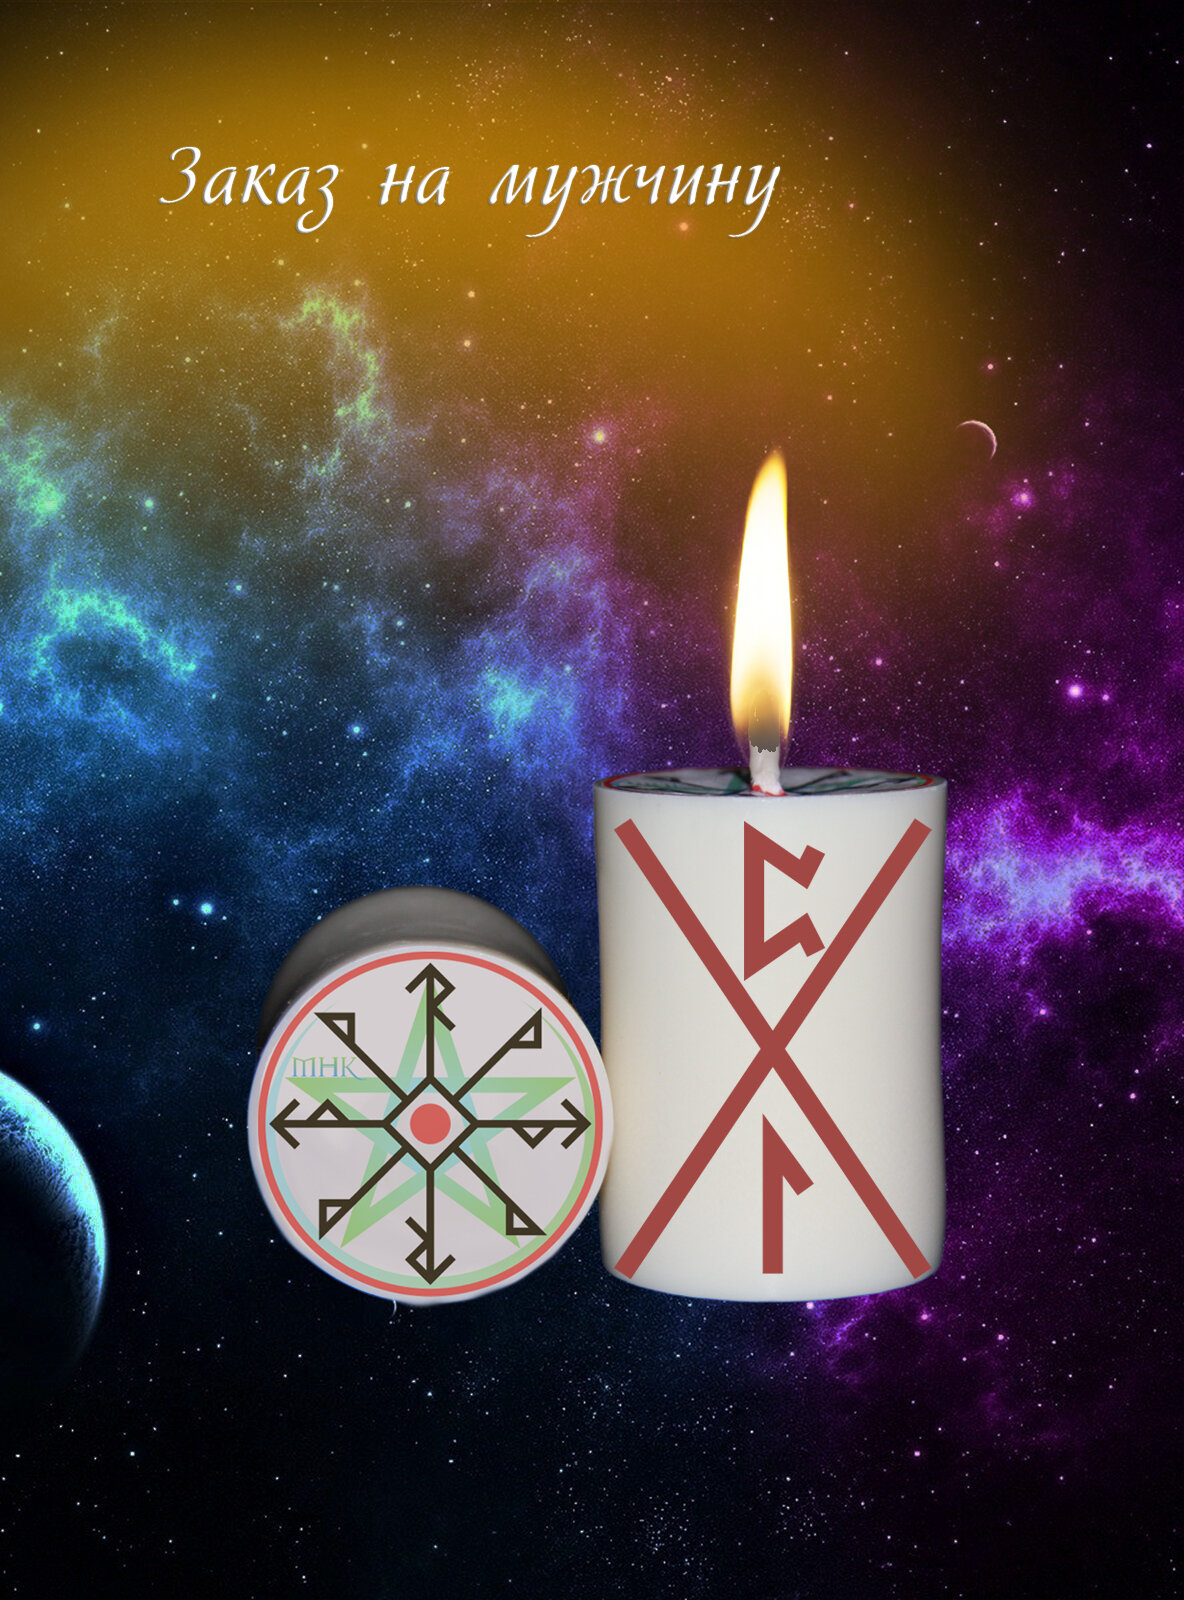 Магическая свеча с рунами программная Ритуал Заказ на мужчину для обрядов и медитации волшебная эзотерика